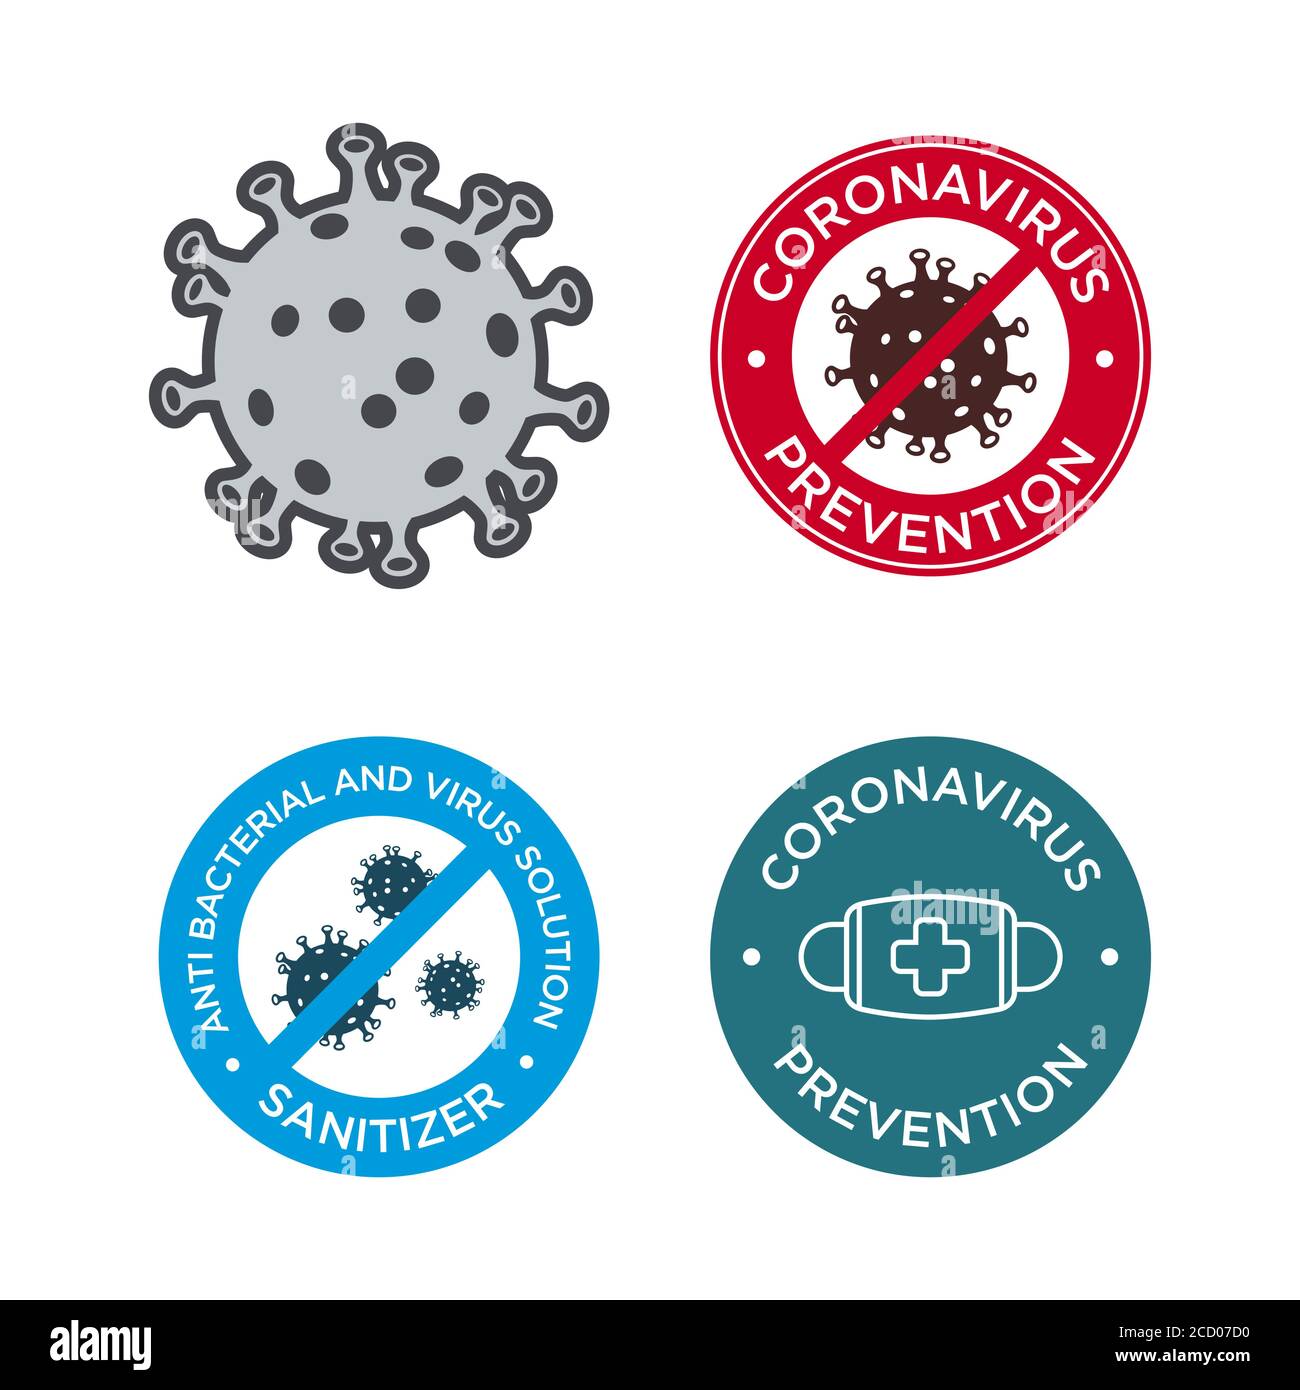 Symbol für Coronavirus-Prävention gesetzt. MERS-Cov (Middle East Respiratory Coronavirus Syndrome), (2019-nCoV). Design zum Schutz vor einer viralen Pandemie. Stock Vektor